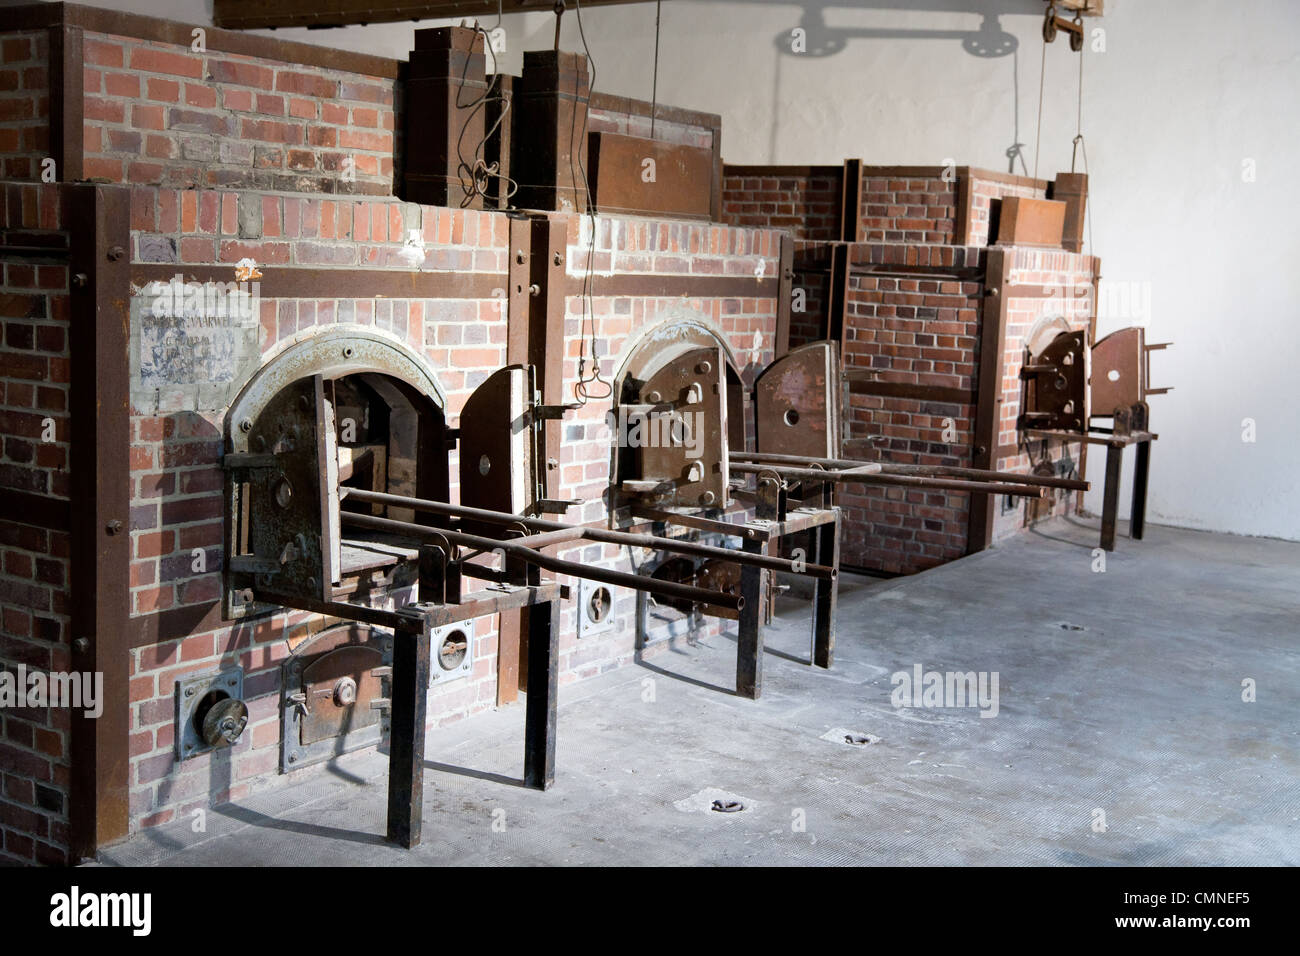 Zeile der Verbrennungsanlage Öfen bei Dachau Dachau, Bayern, Deutschland. Stockfoto